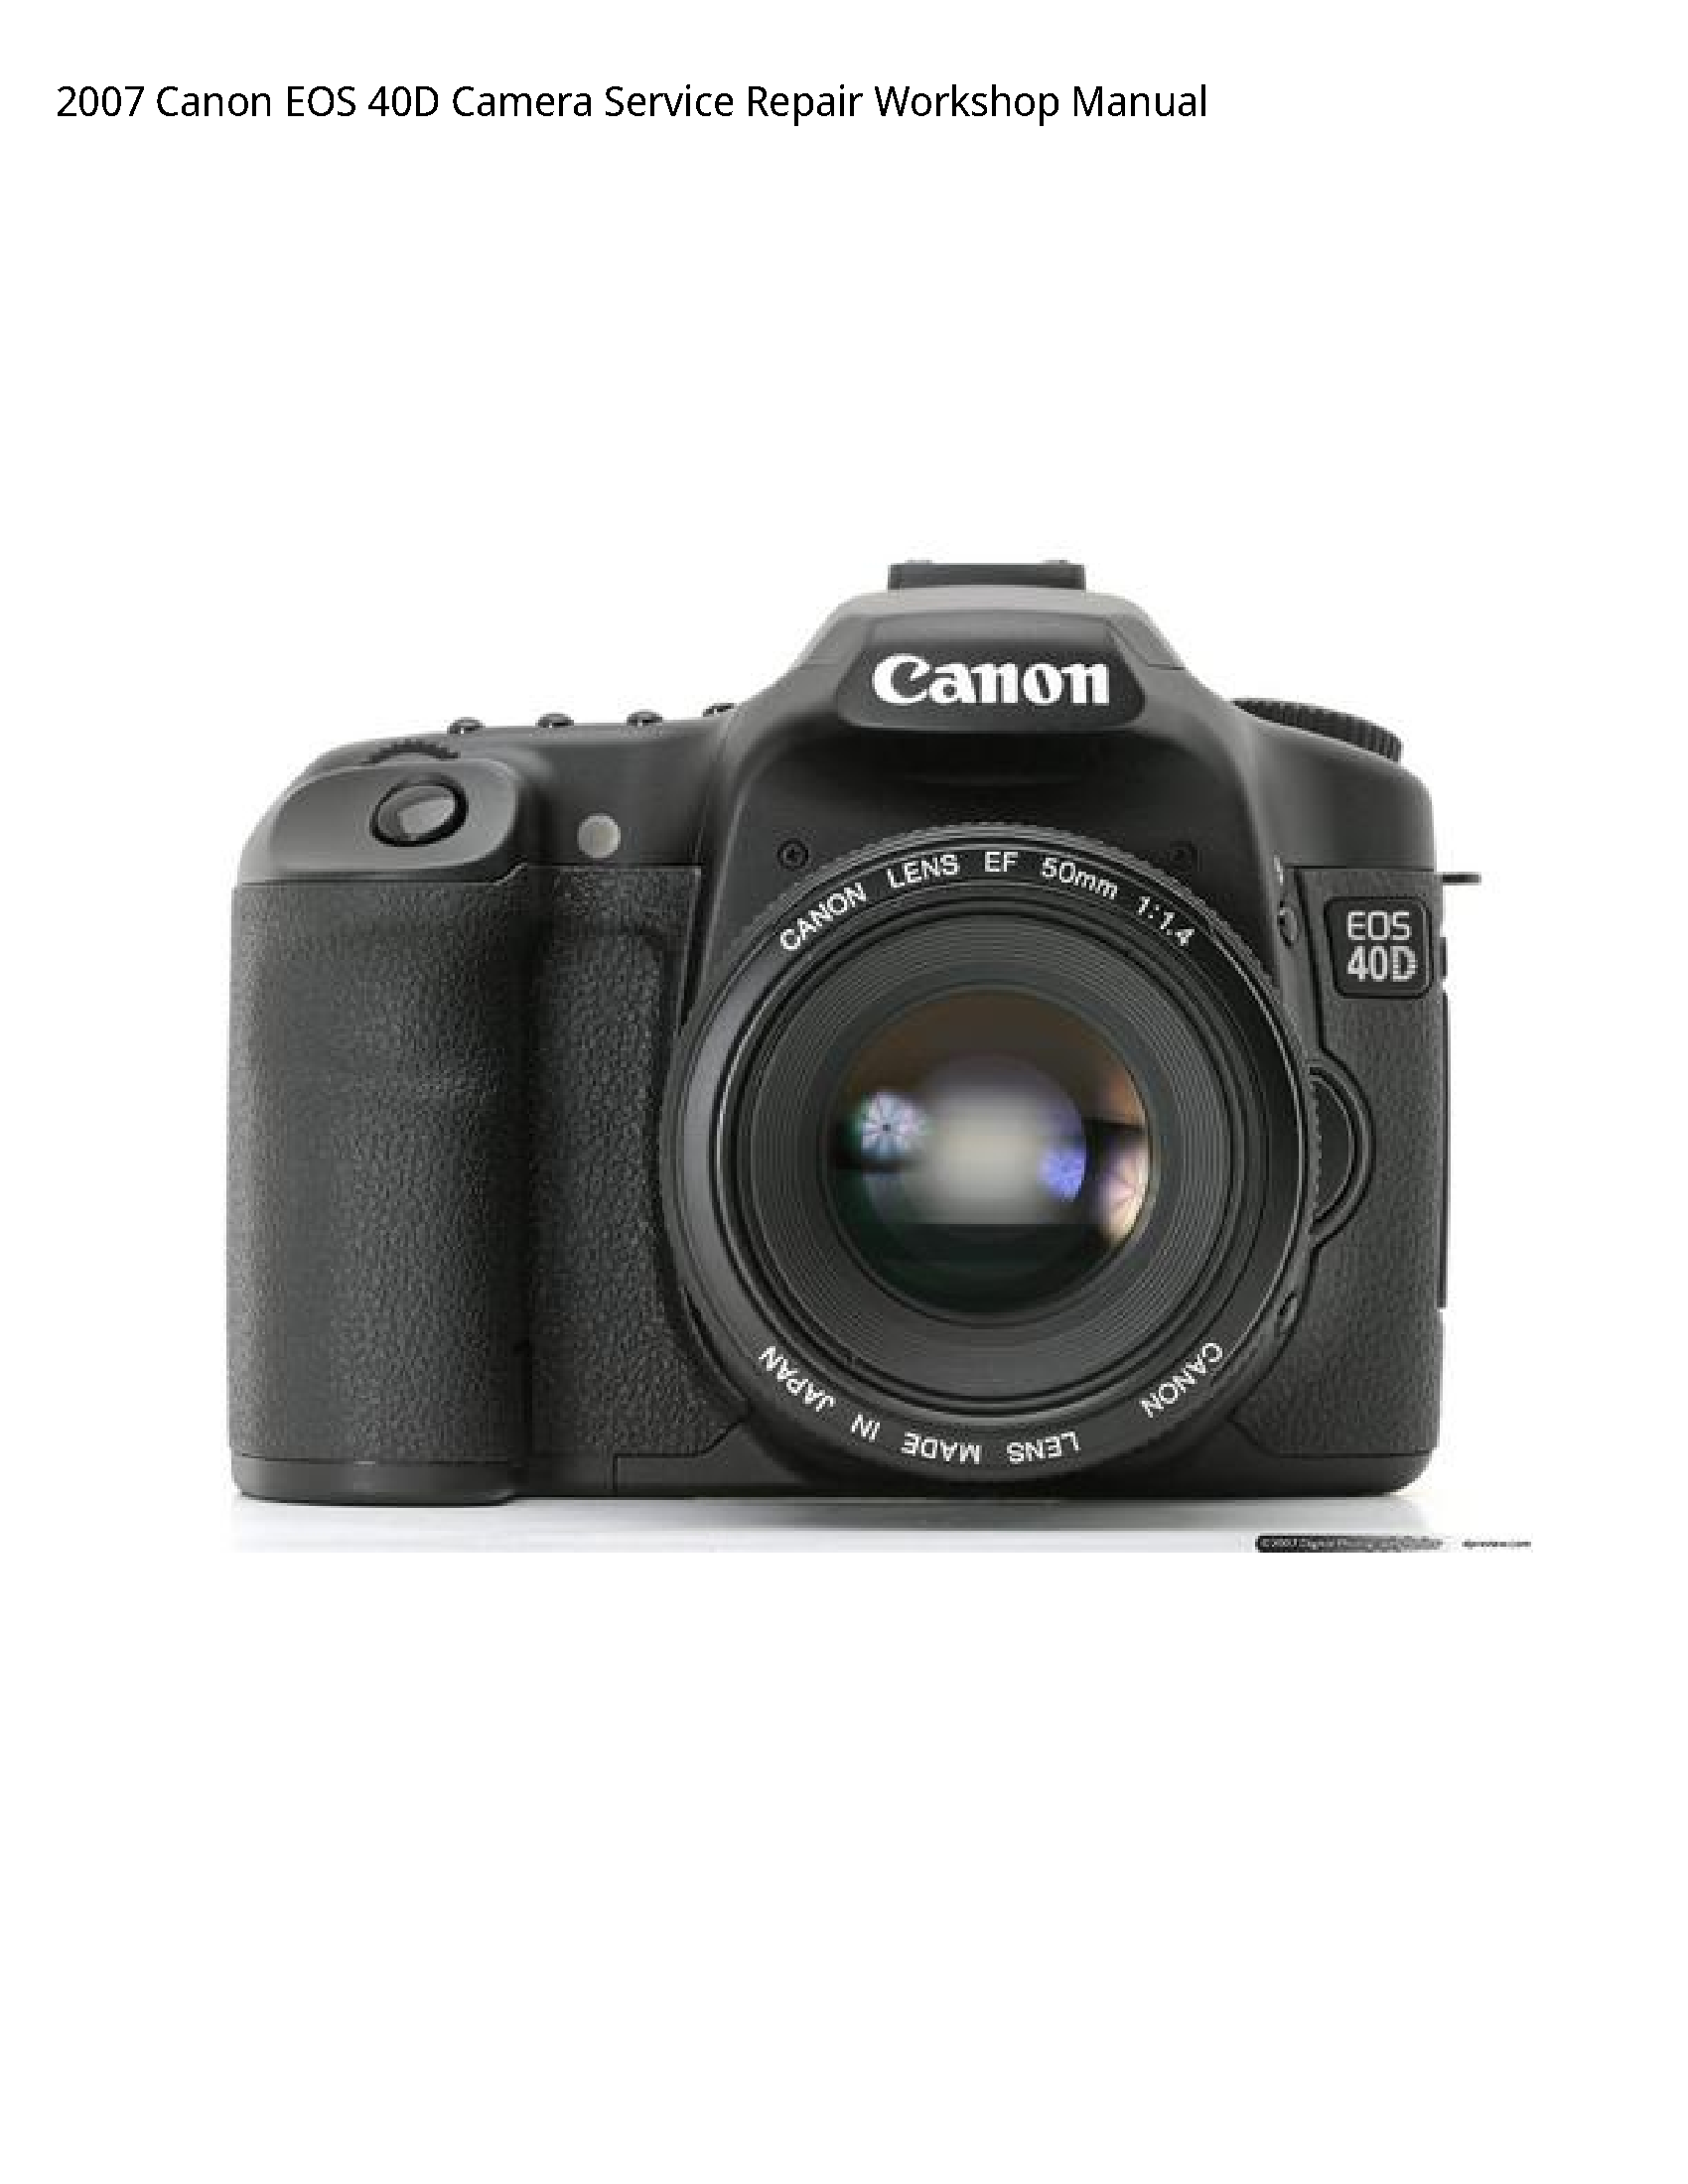 Canon 40D EOS Camera manual